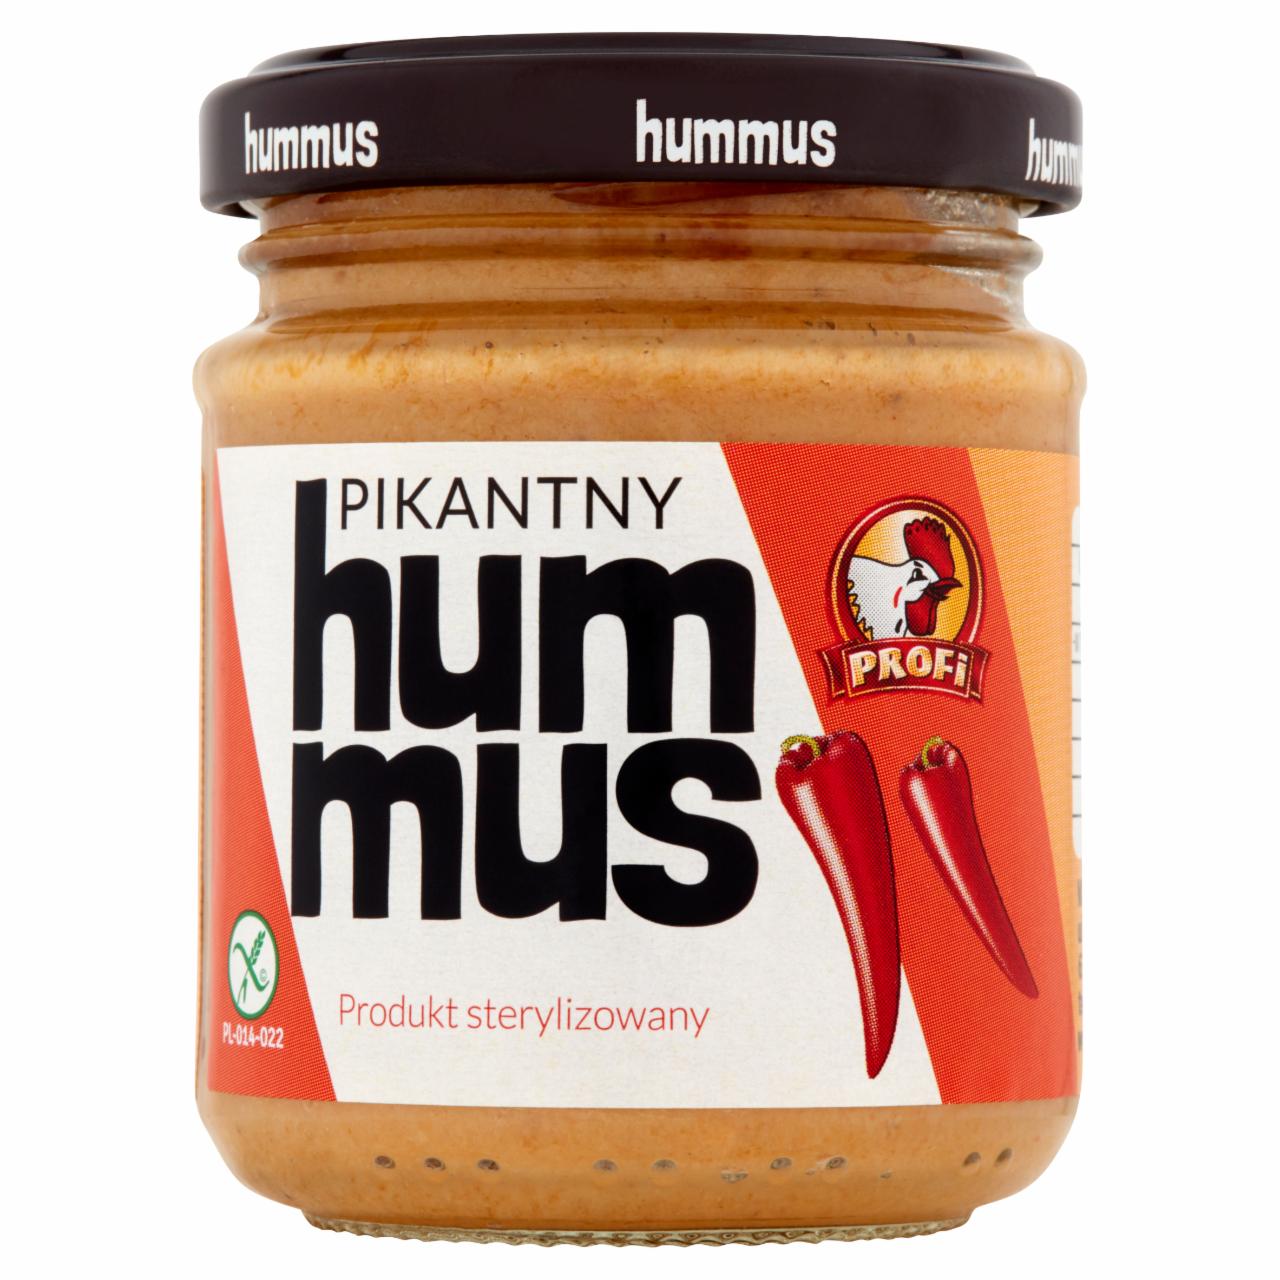 Zdjęcia - Hummus pikantny 200 g